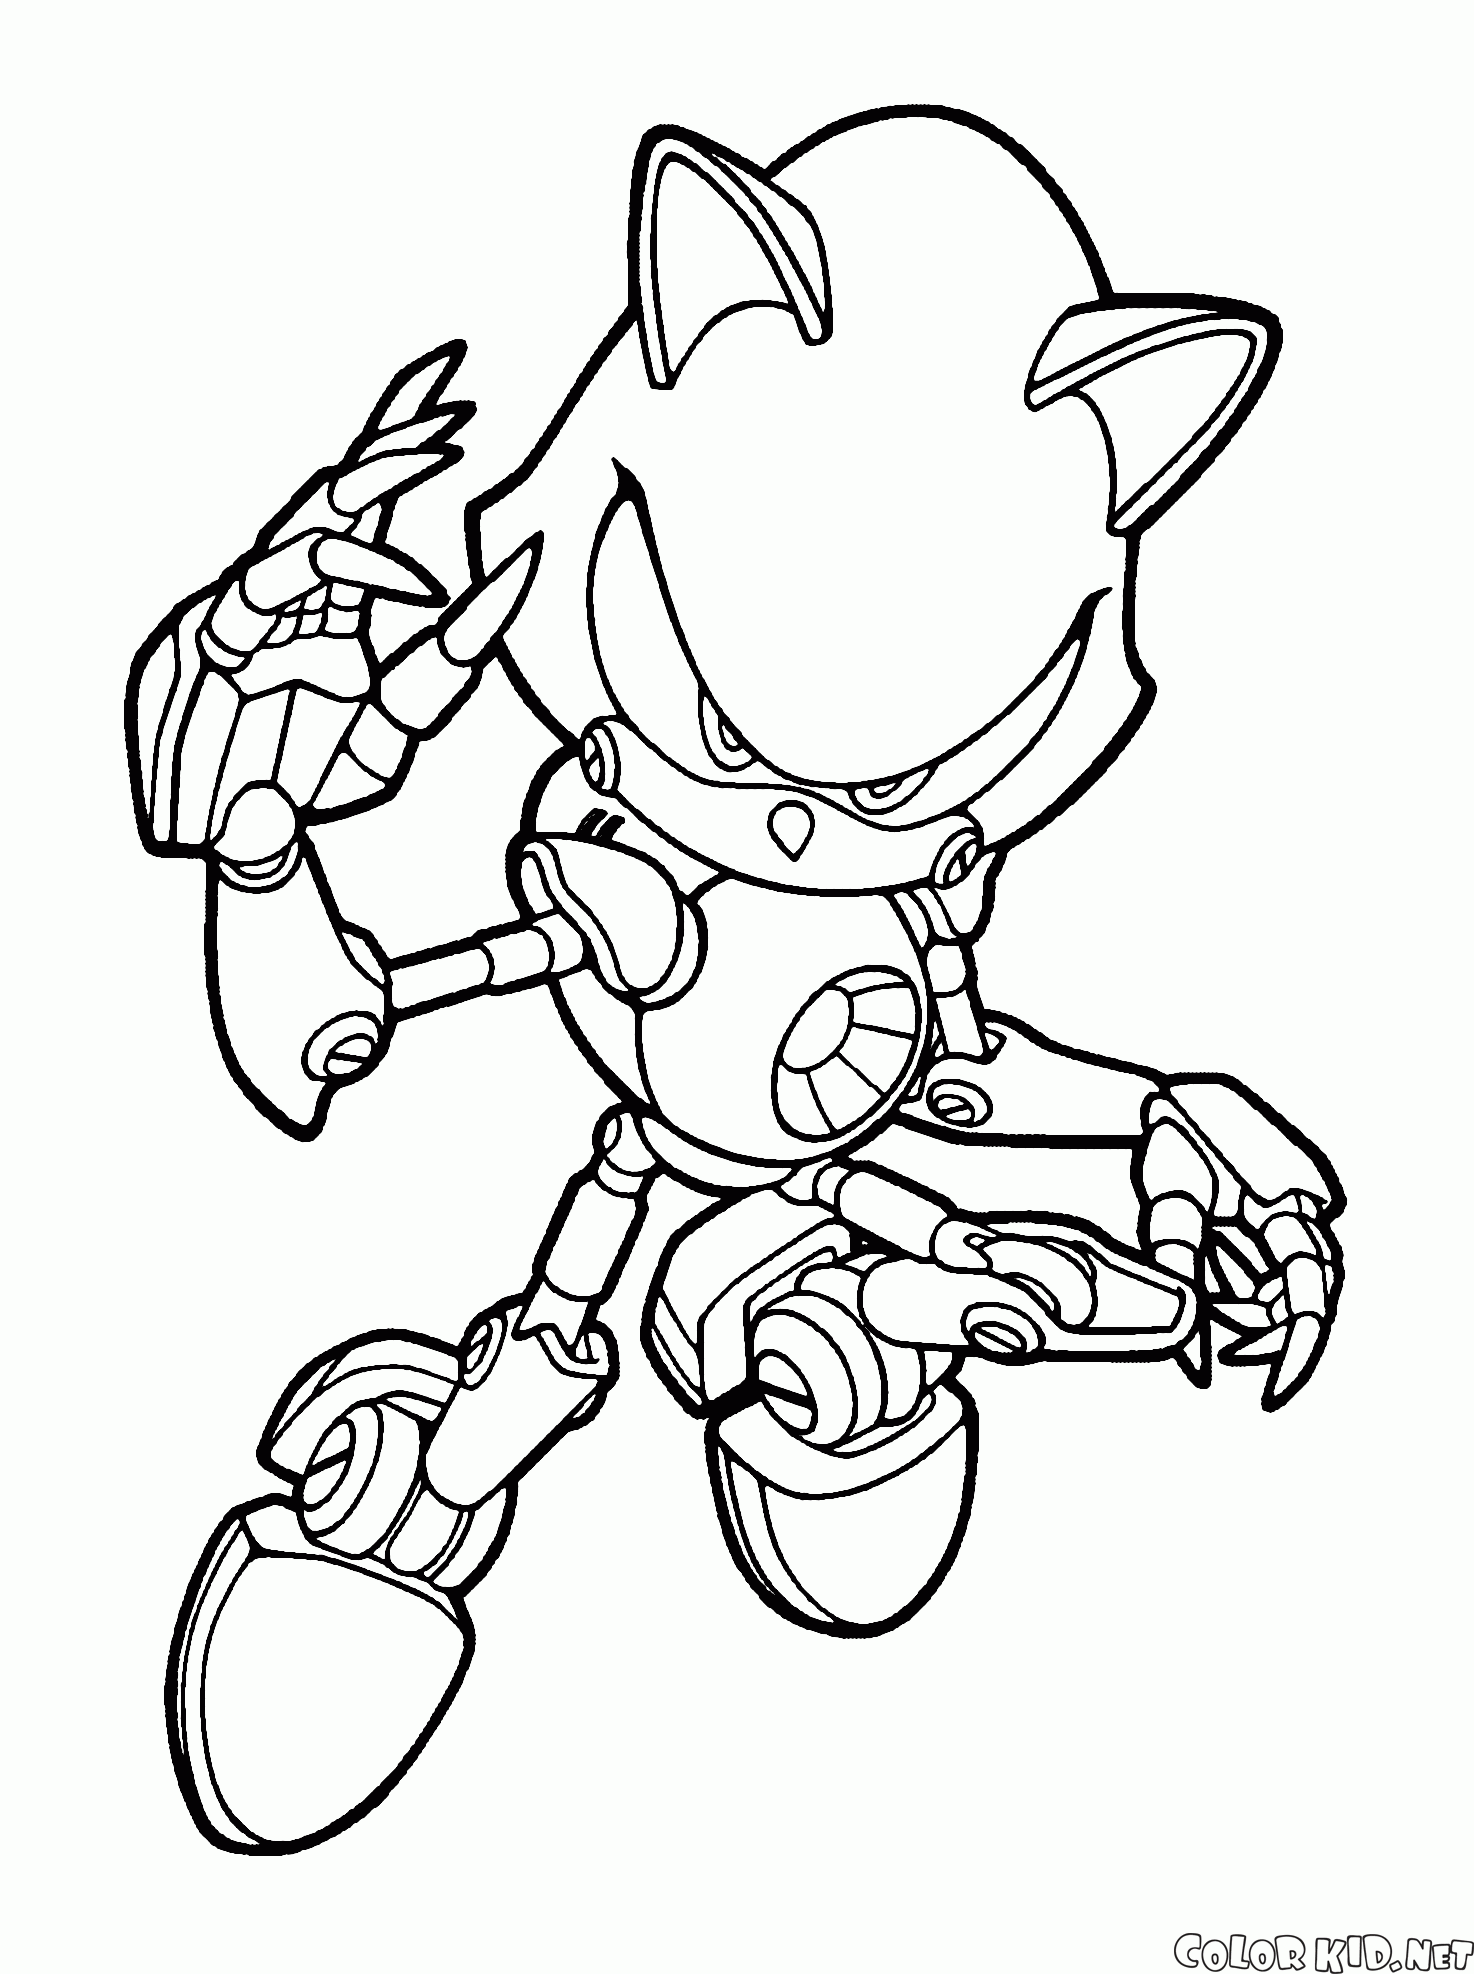 Malvorlagen - Metal Sonic